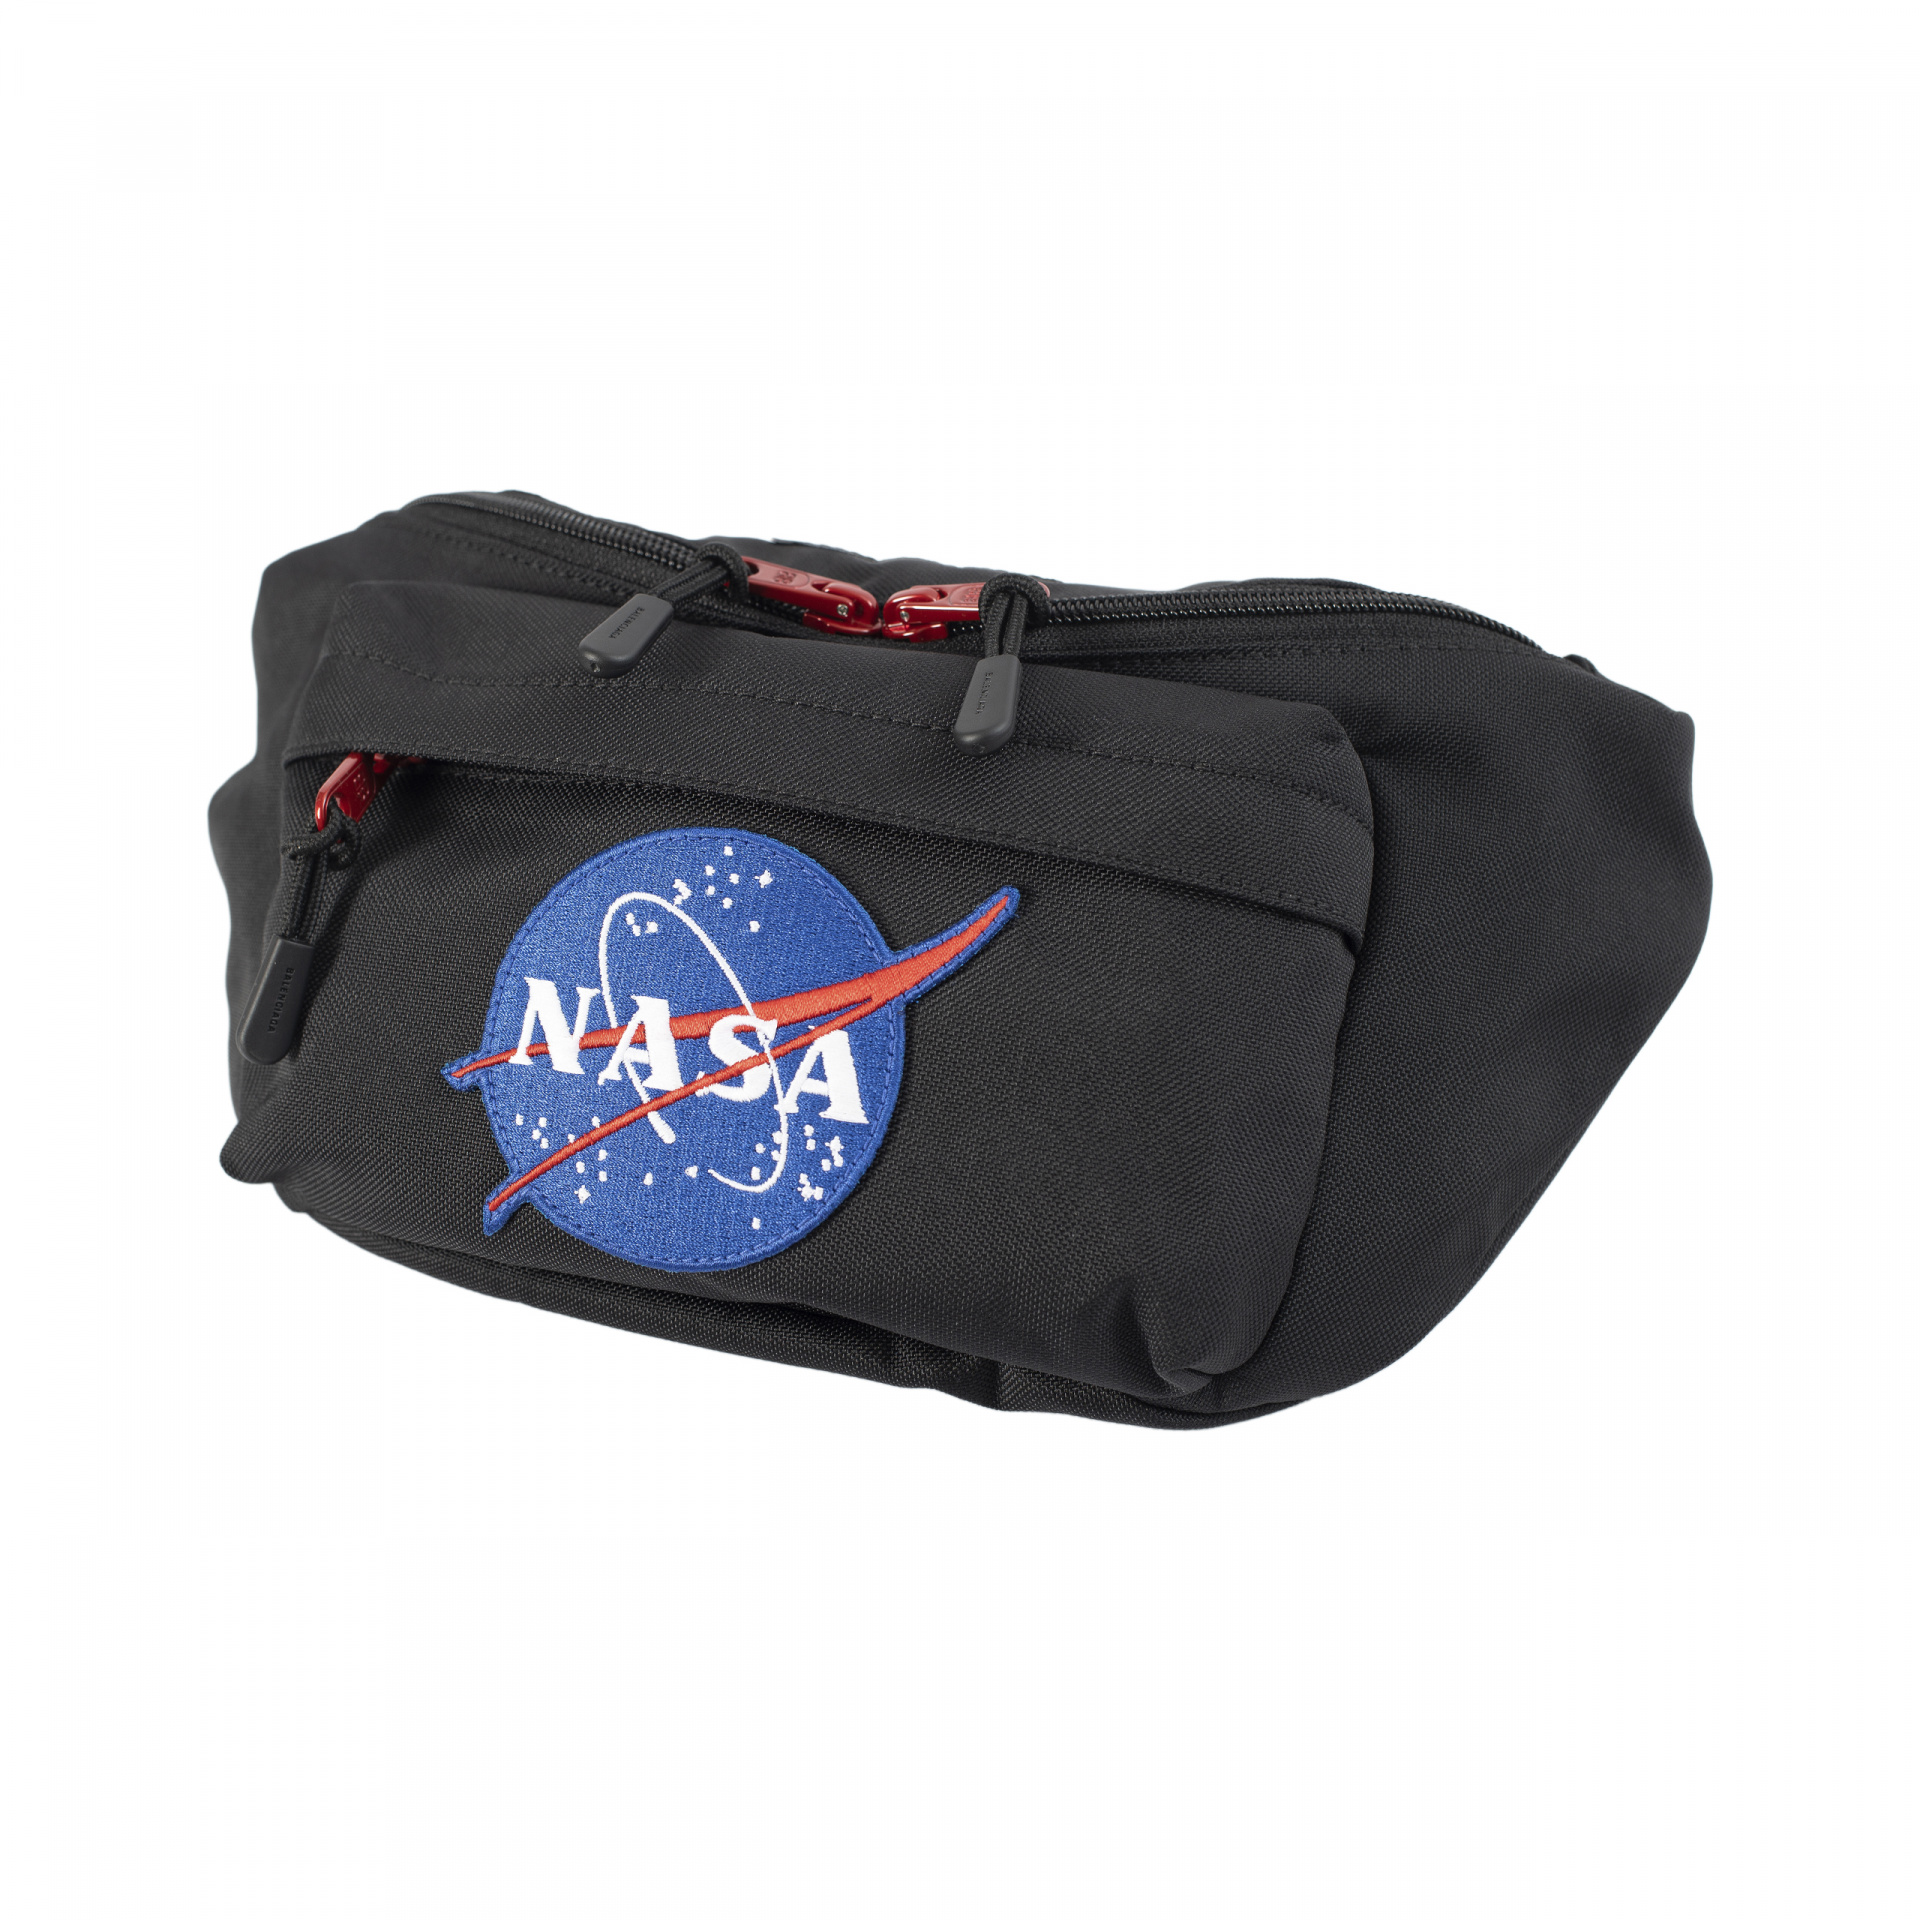 Balenciaga Black Space Beltpack Bag NASA